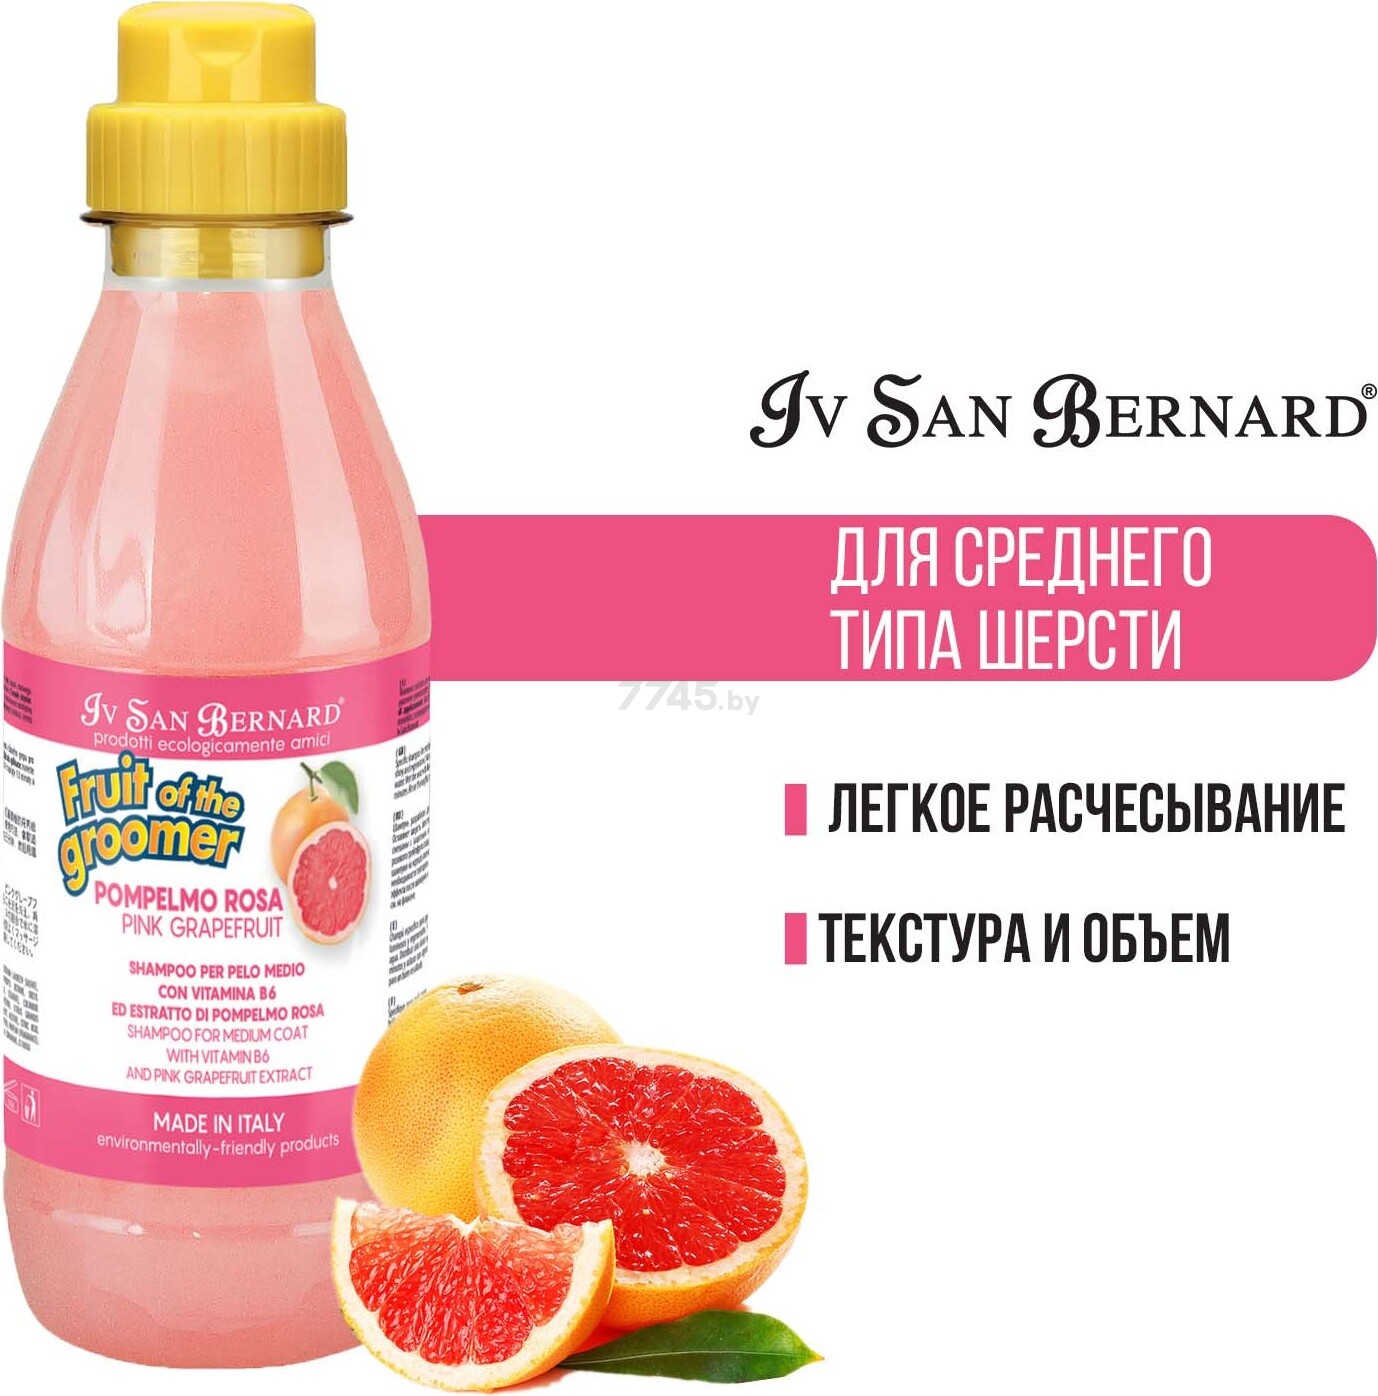 Шампунь для животных со средней шерстью IV SAN BERNARD Fruit Of The Groomer Pink Grapefruit с витаминами 500 мл (NSHAPO500) - Фото 2